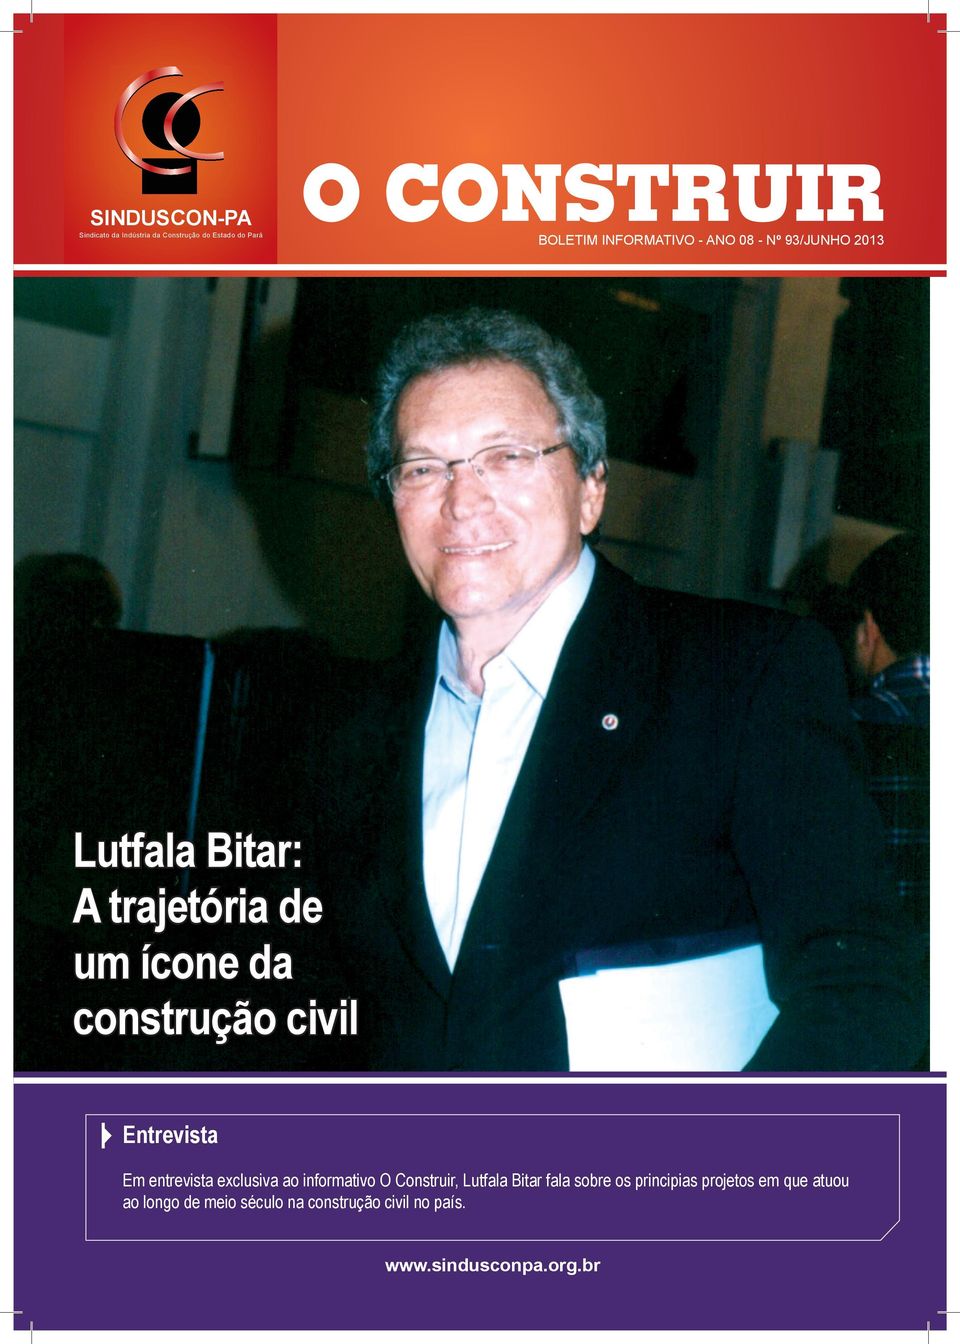 civil Entrevista Em entrevista exclusiva ao informativo O Construir, Lutfala Bitar fala sobre os